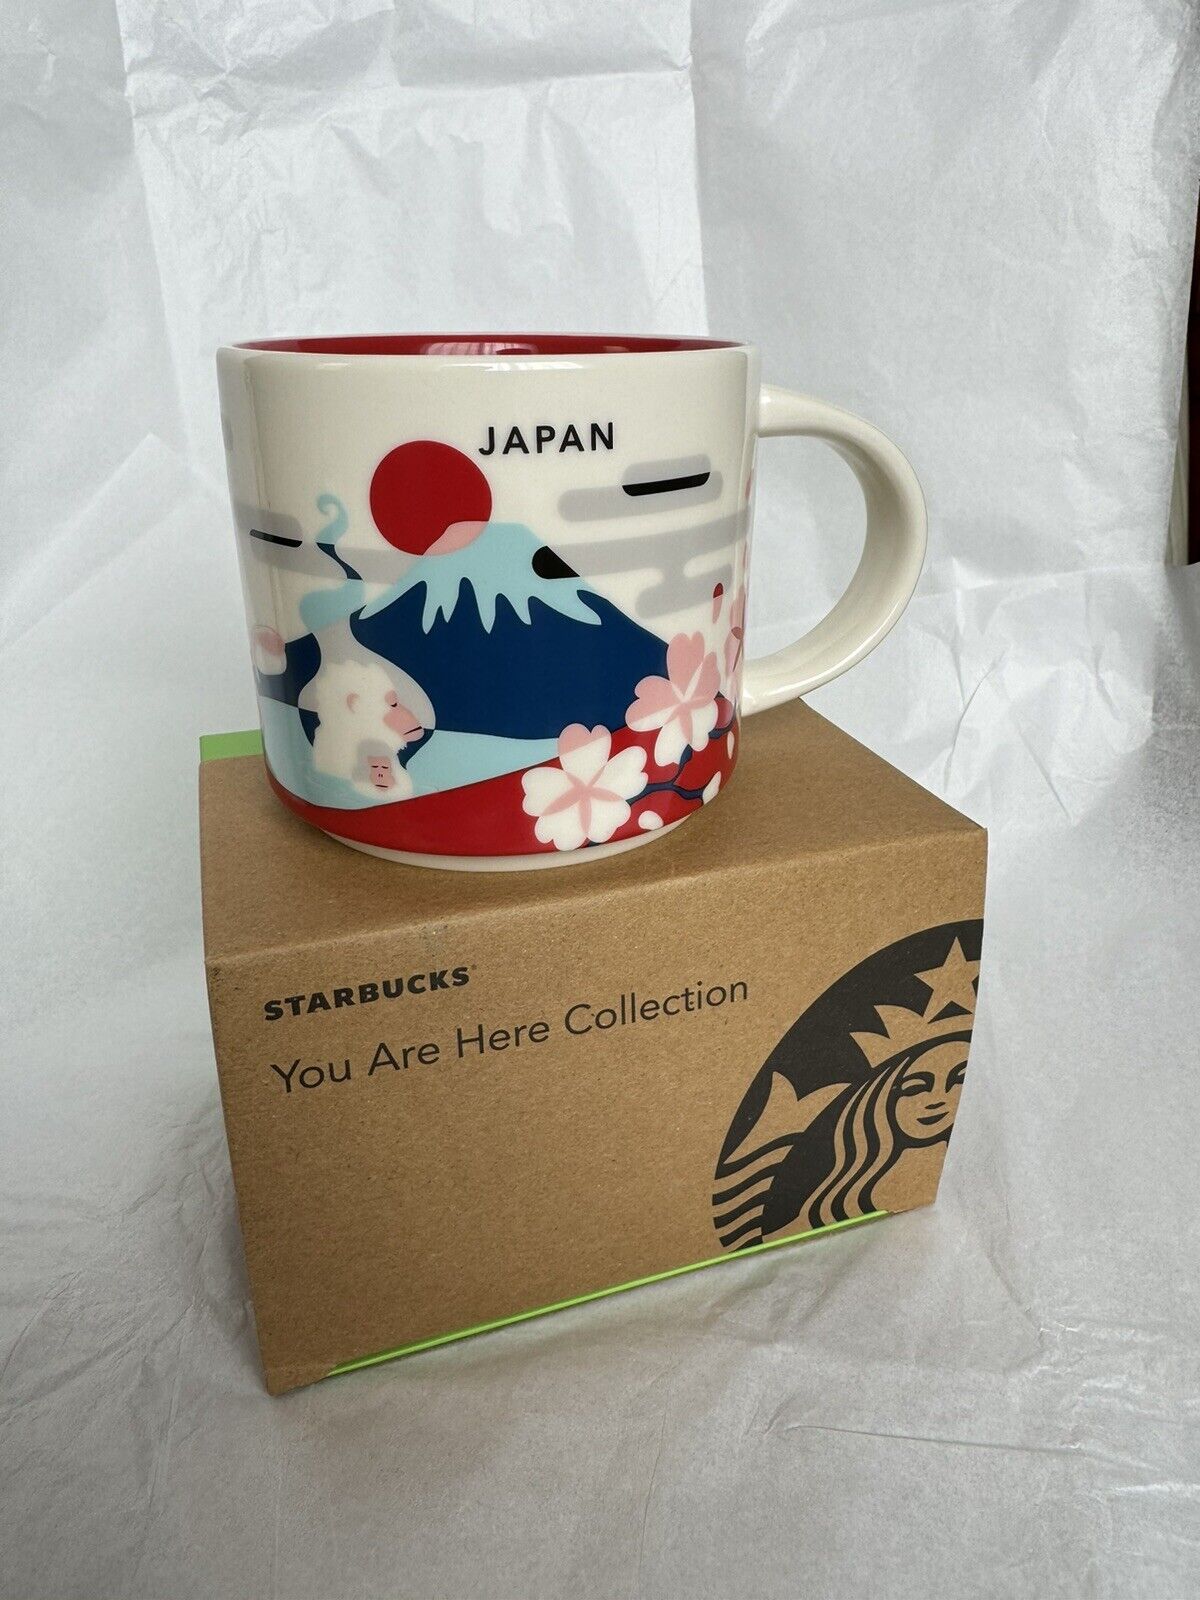 NEW STARBUCKS Japan “YOU ARE HERE” Collection , “JAPAN” Mug, 414 ml